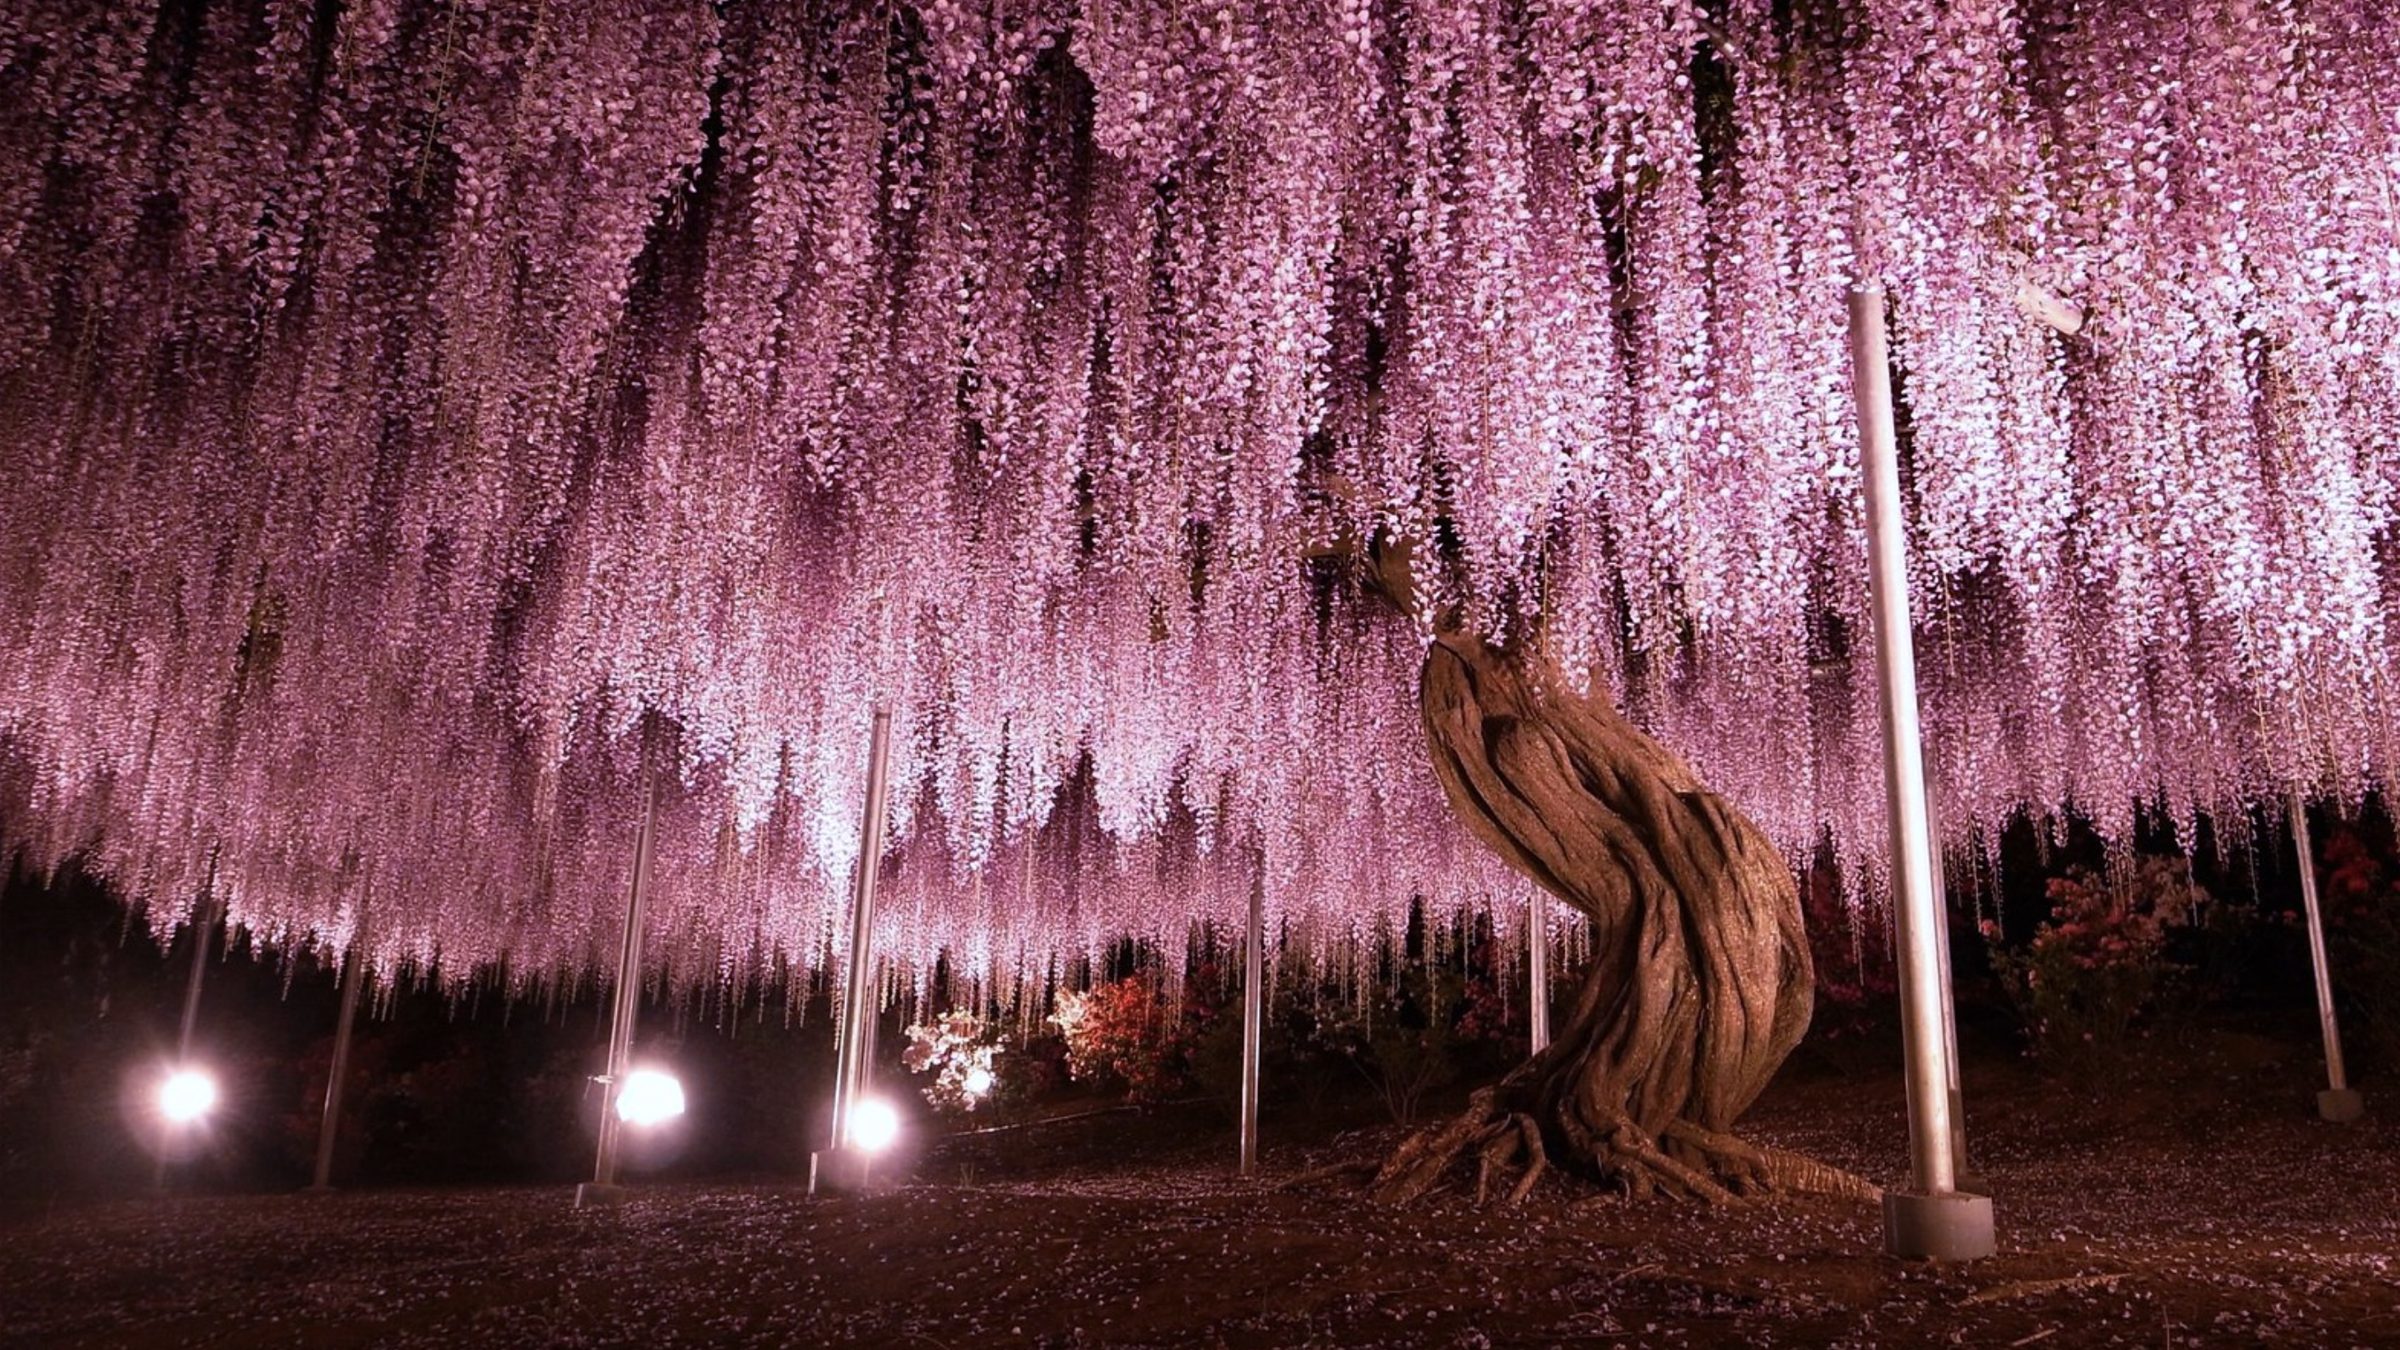 Japon : cet arbre à glycine centenaire classé parmi les plus beau du monde